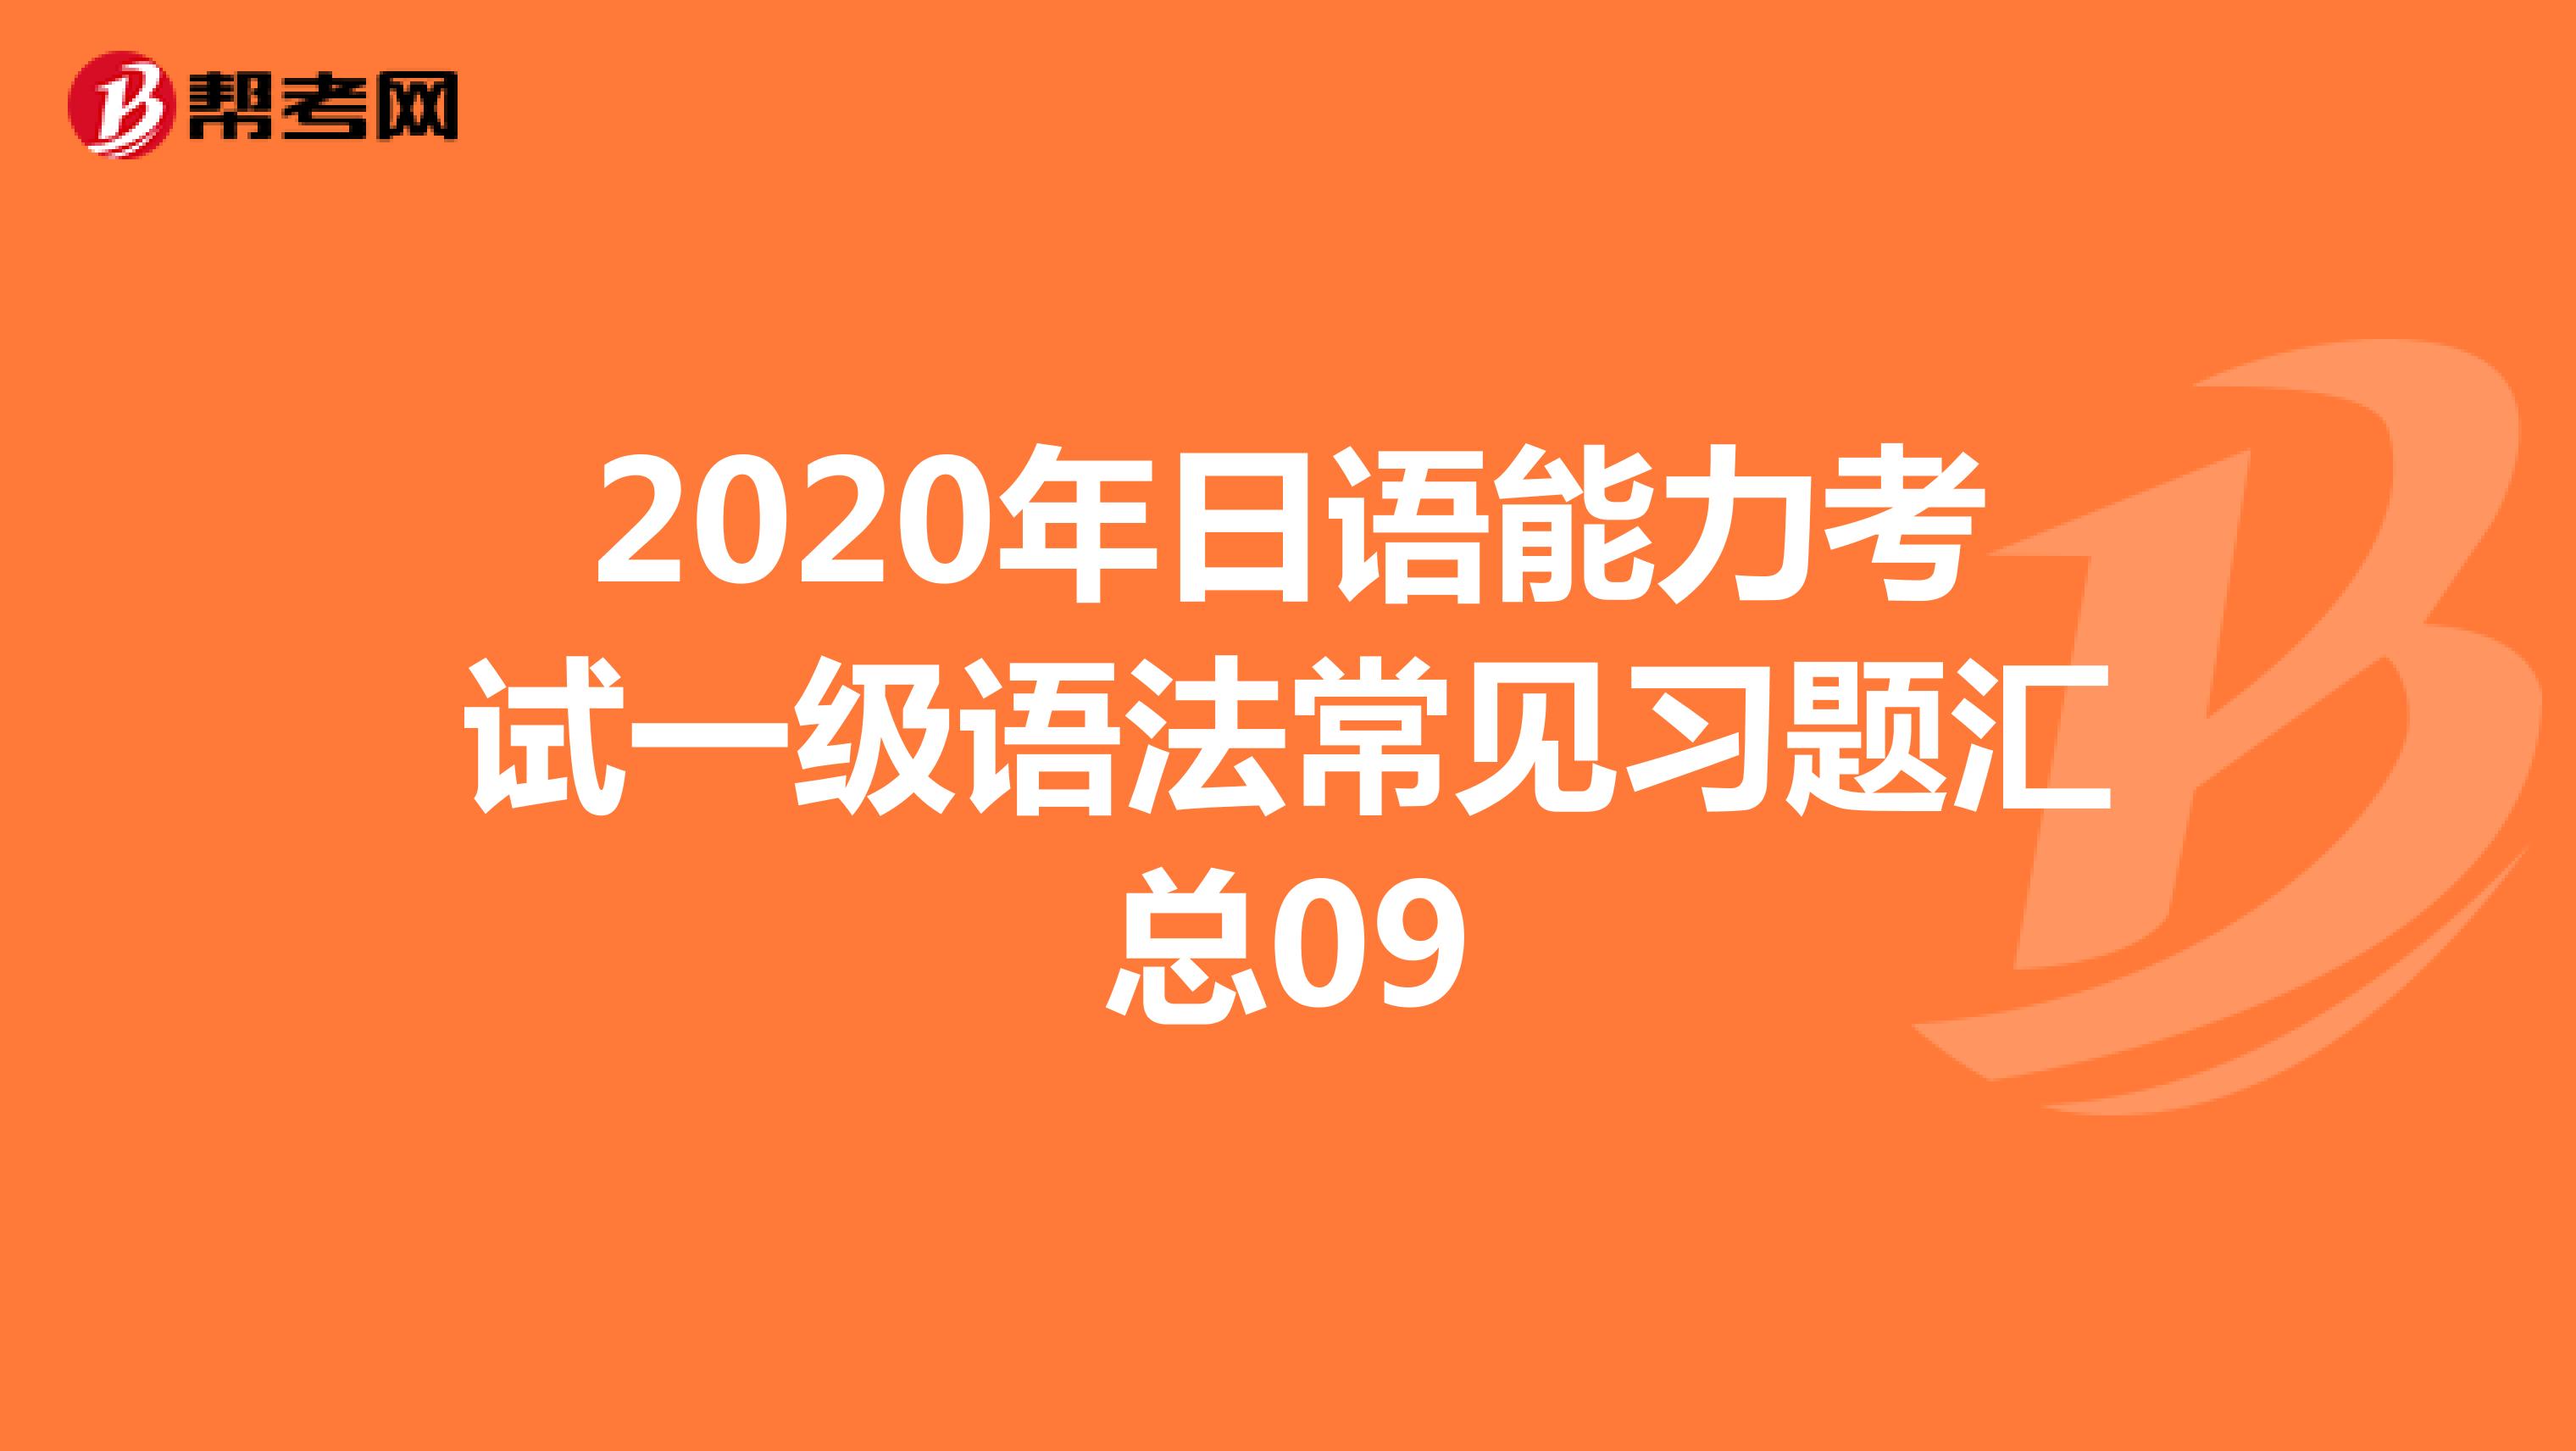 2020年日语能力考试一级语法常见习题汇总09